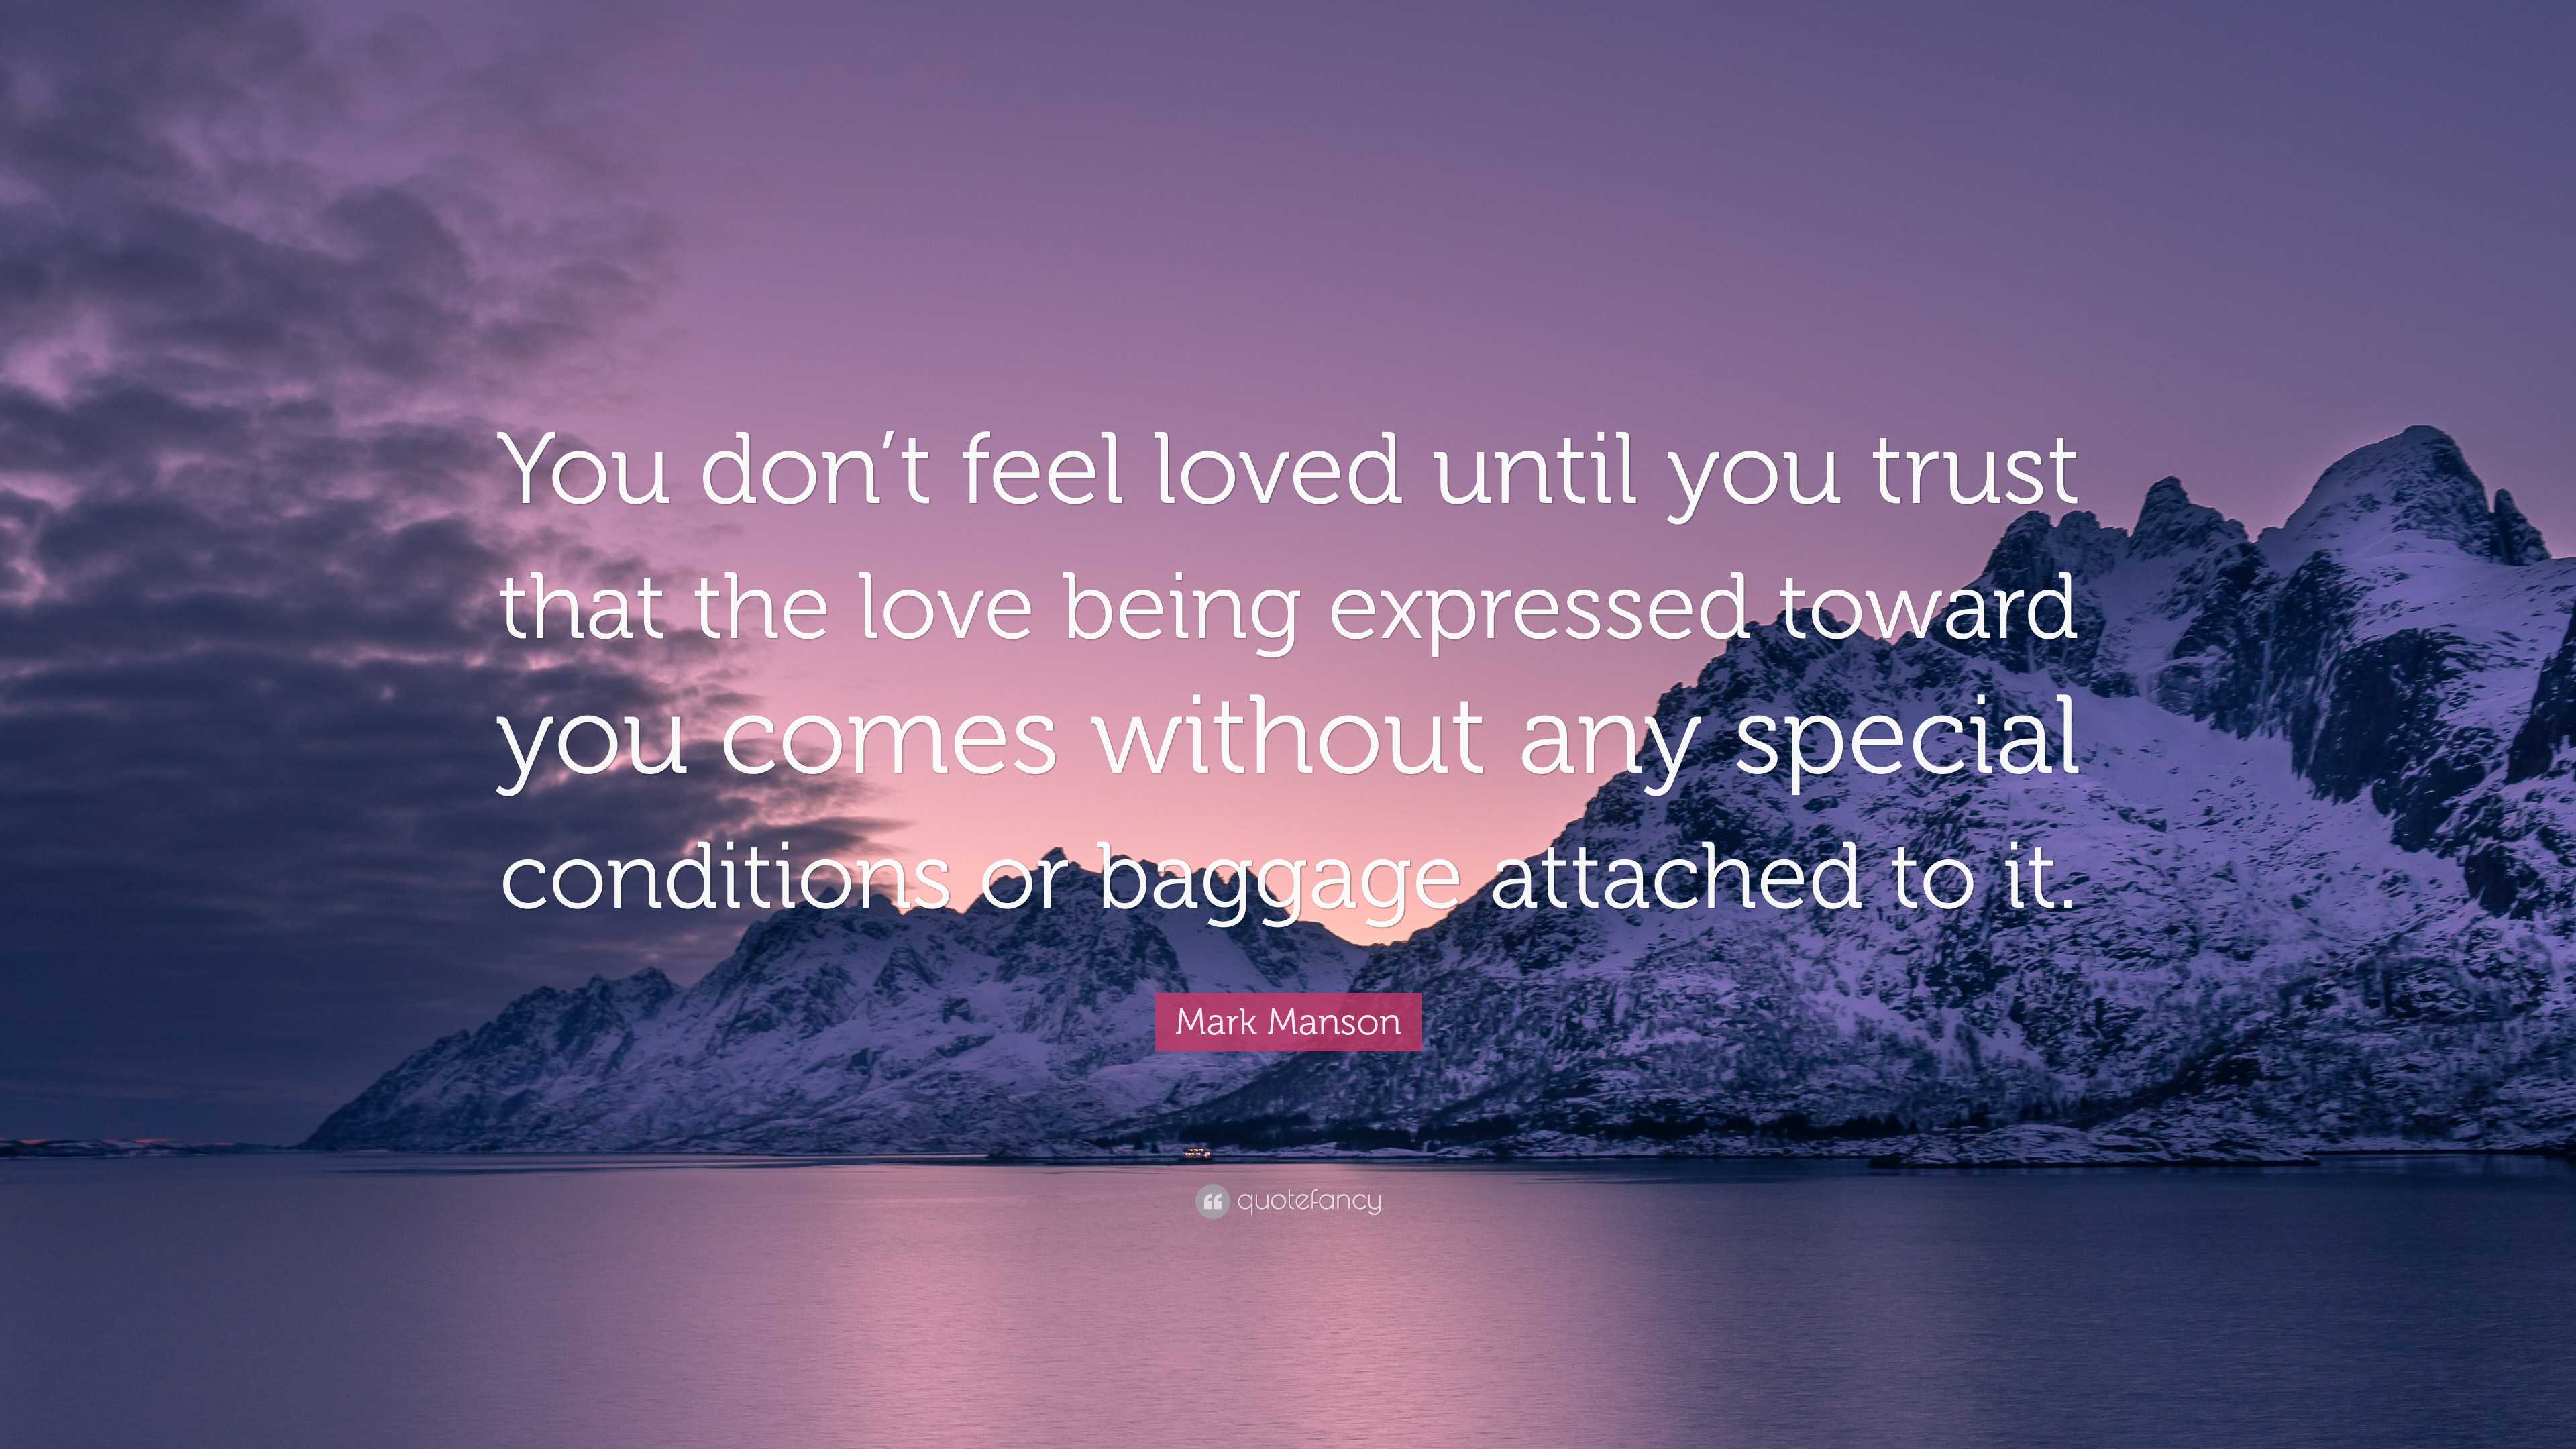 Mark Manson - True love - that is, deep, abiding love that